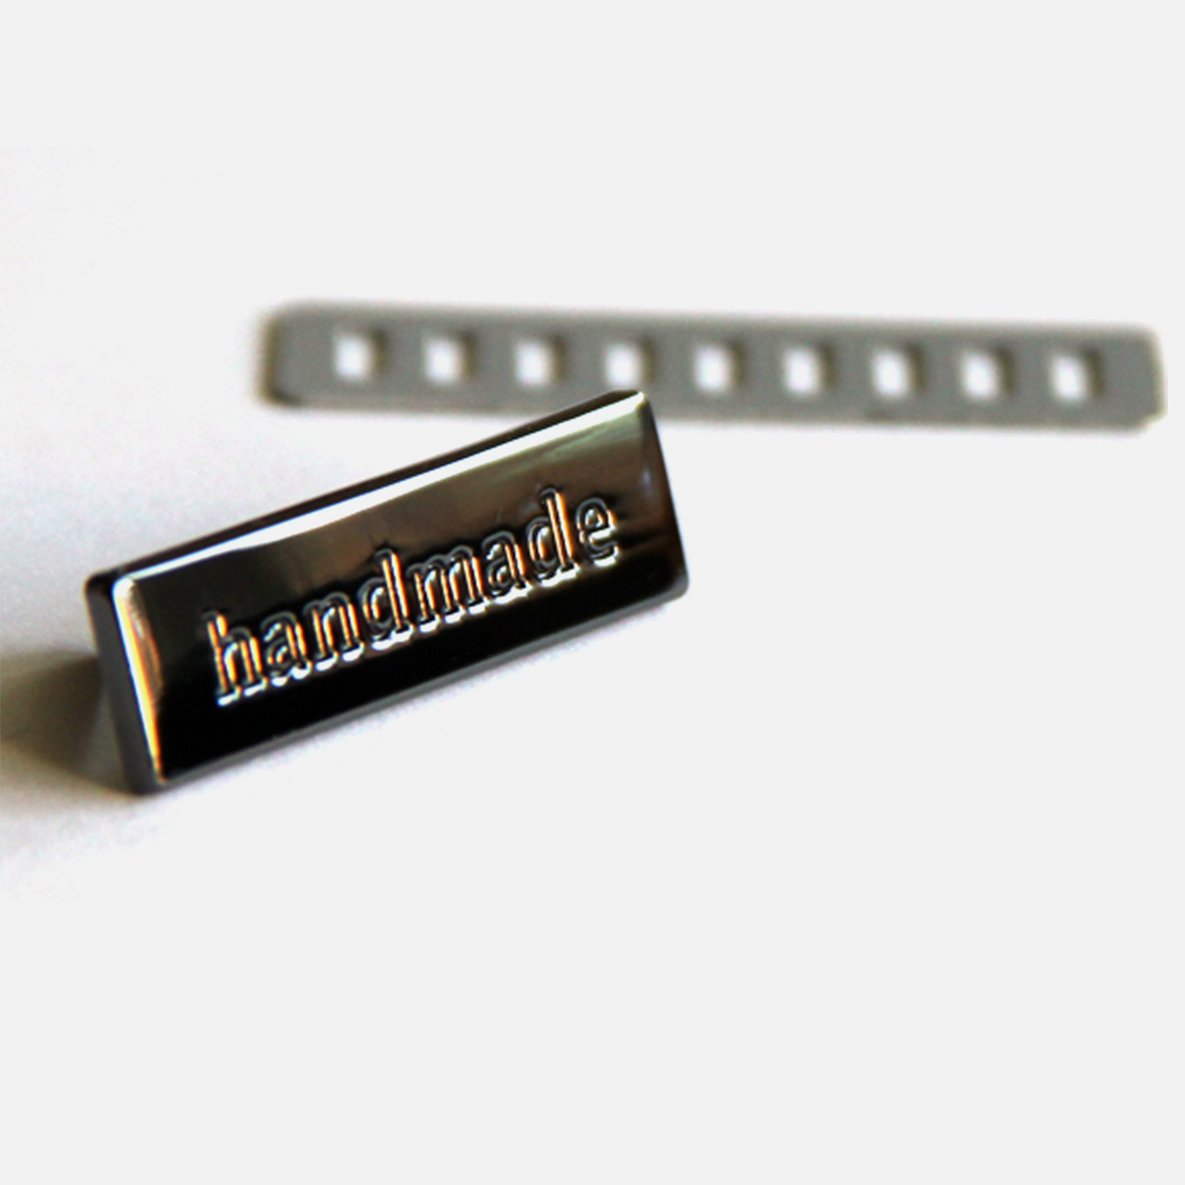 Metall Handmade Label Pin Etikett